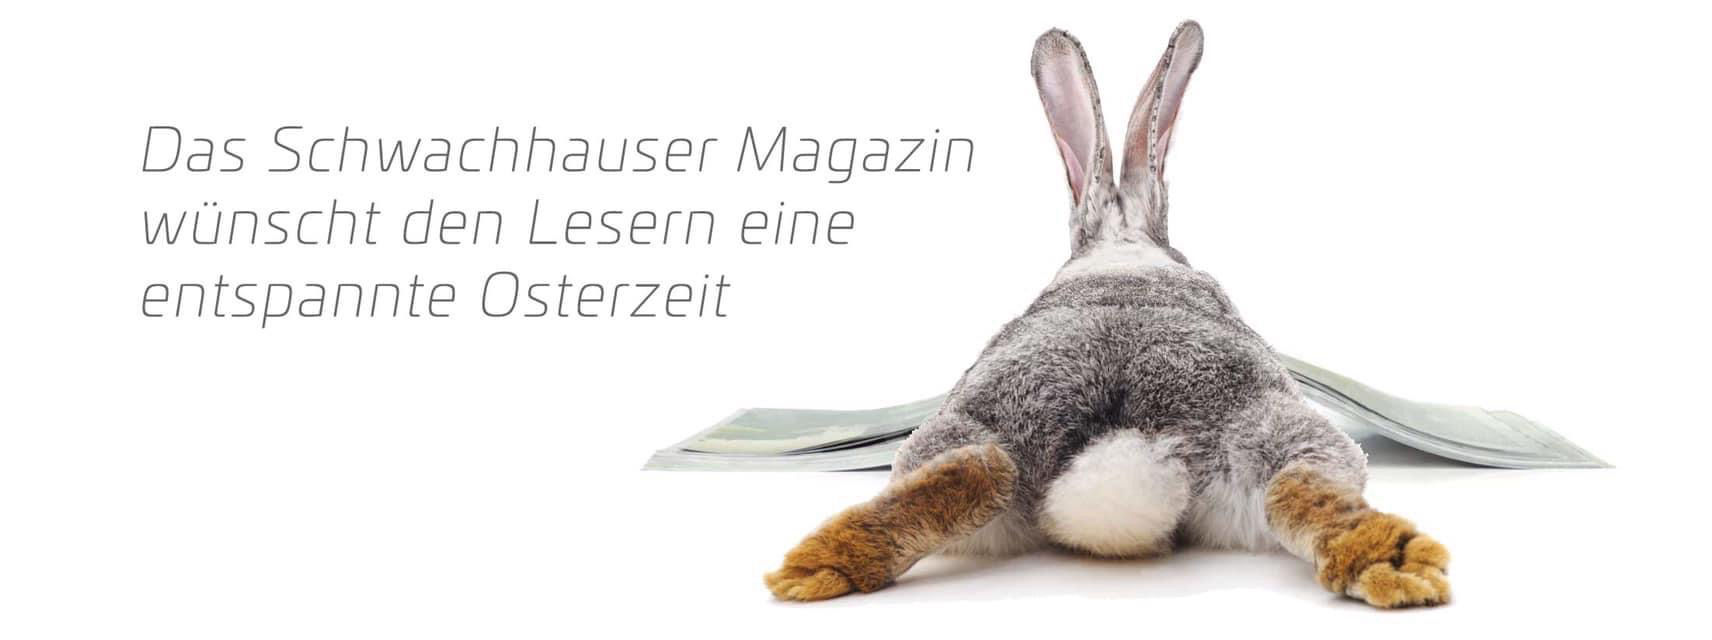 Frohe Ostern wünscht das Team des Schwachhauser Magazins